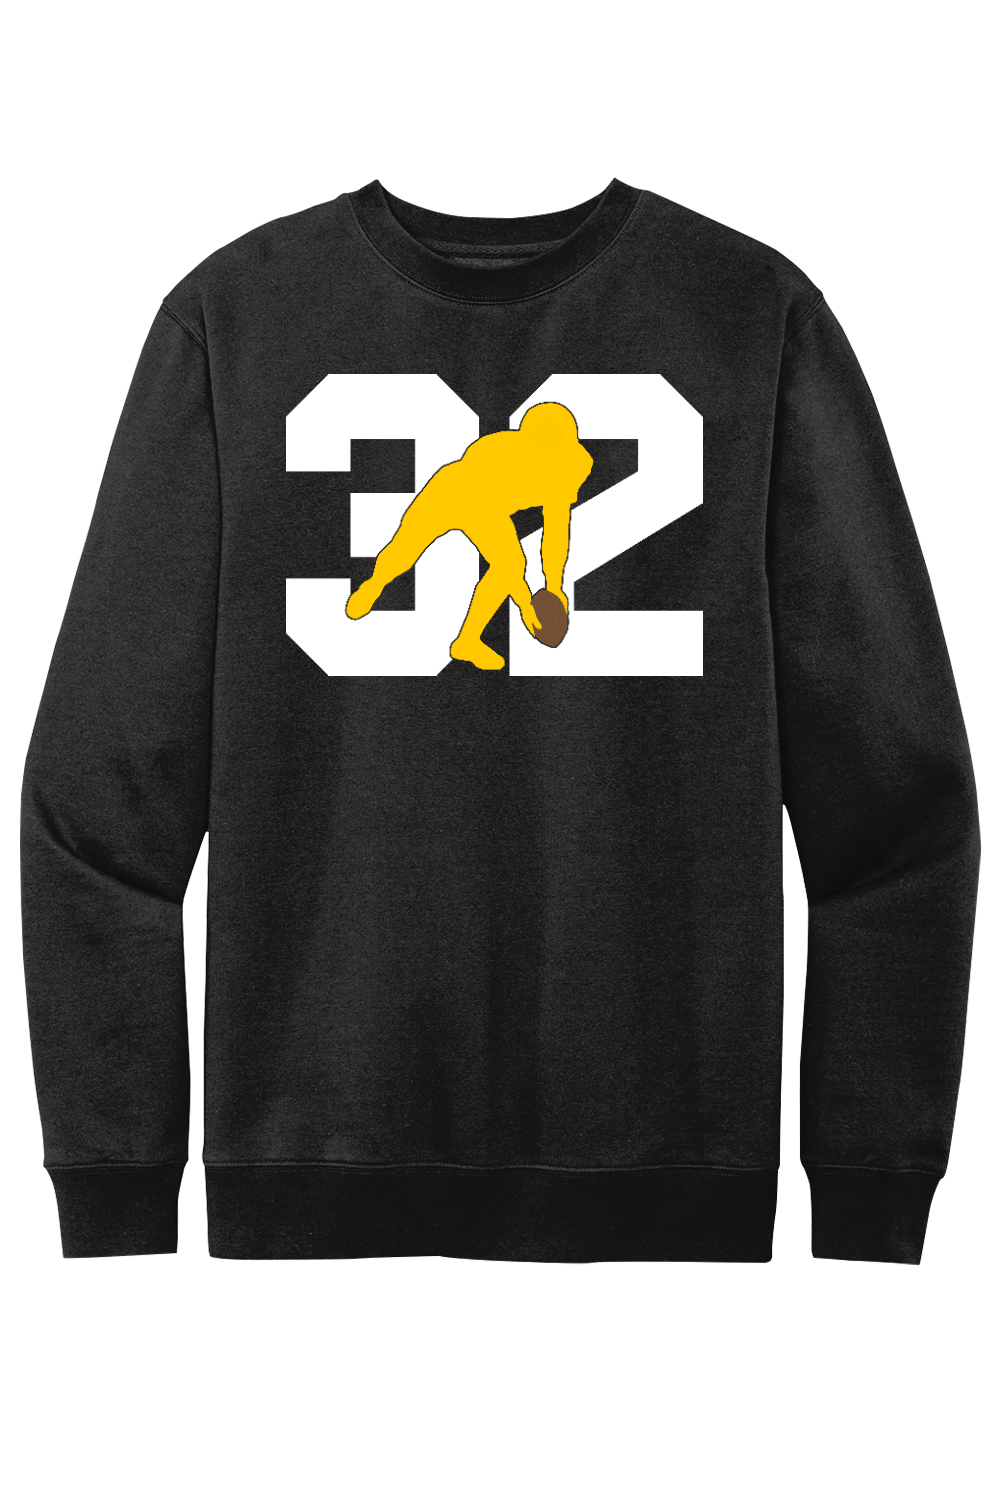 32 Forever - Fleece Crewneck Sweatshirt - Yinzylvania